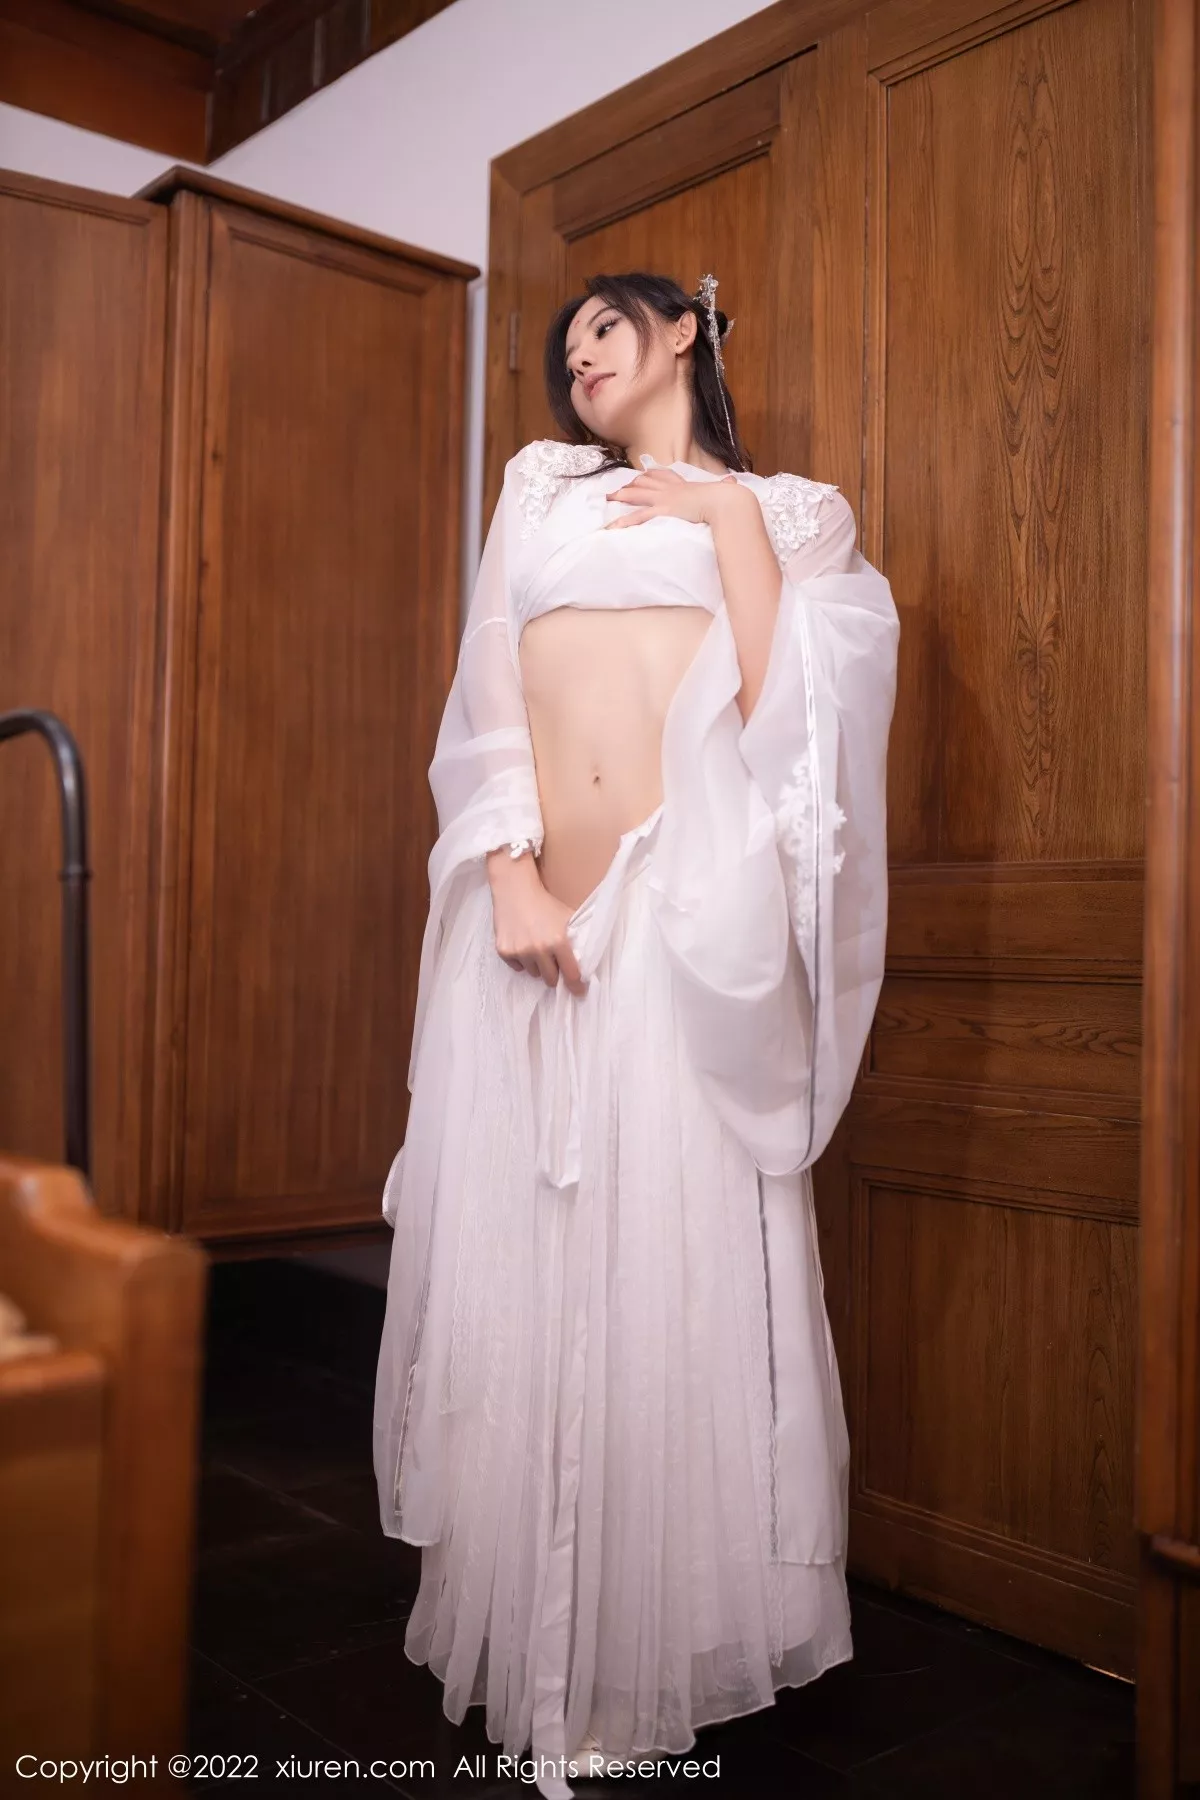 [XiuRen秀人网]第5573期_模特就是阿朱啊嫦娥装扮中秋主题白色服饰秀曼妙身姿诱惑写真85P